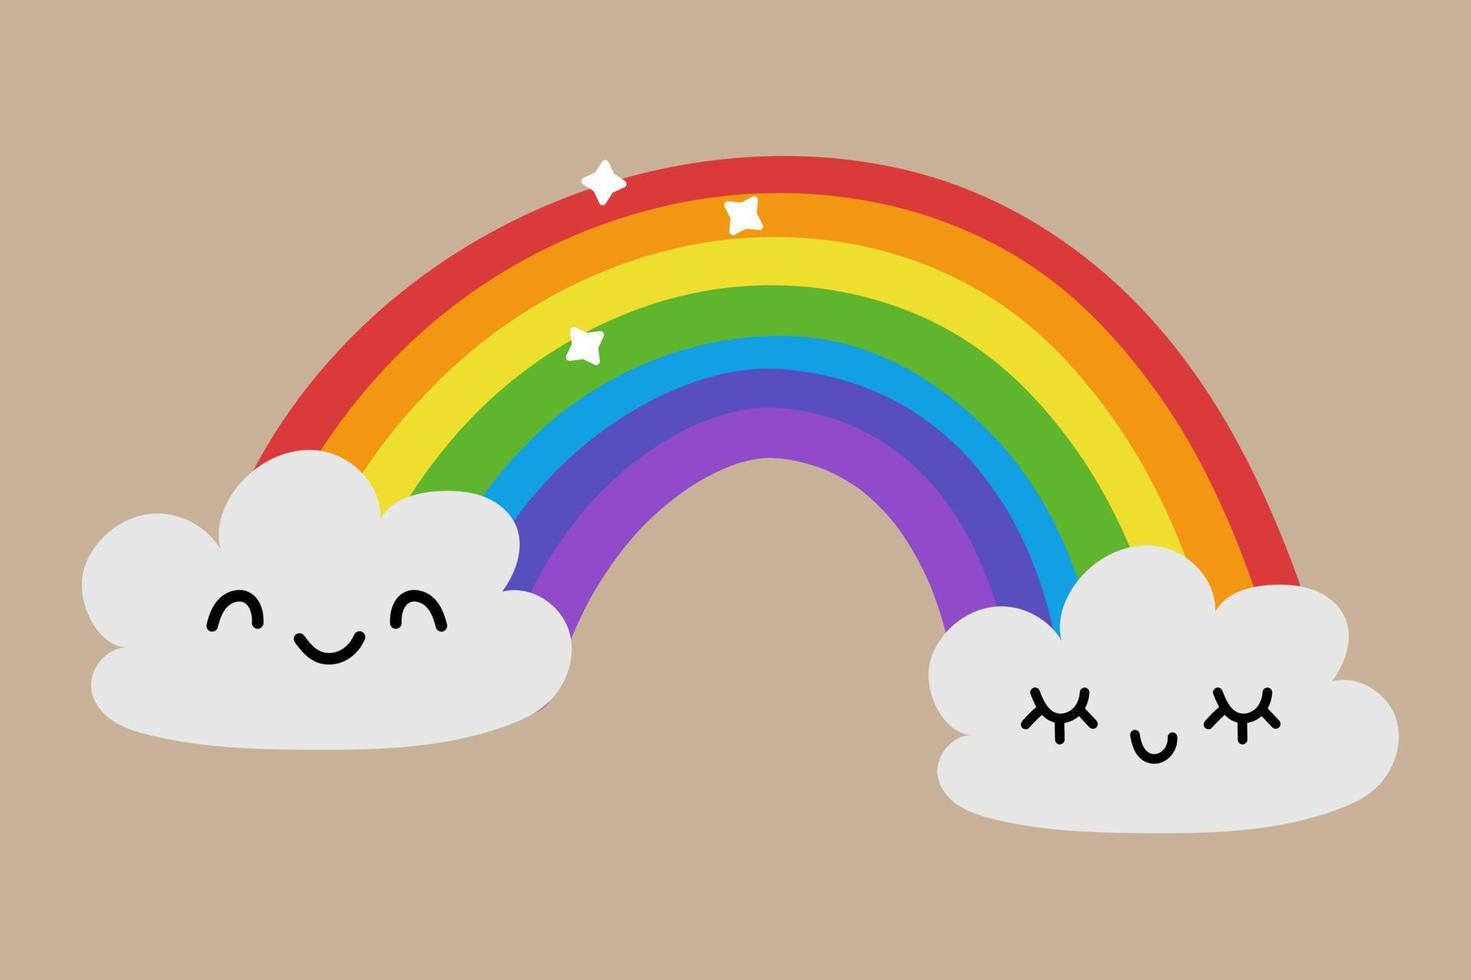 arcoíris. fondo, con nubes. malla degradada, arco iris de color, fondo de  pantalla de cielo azul